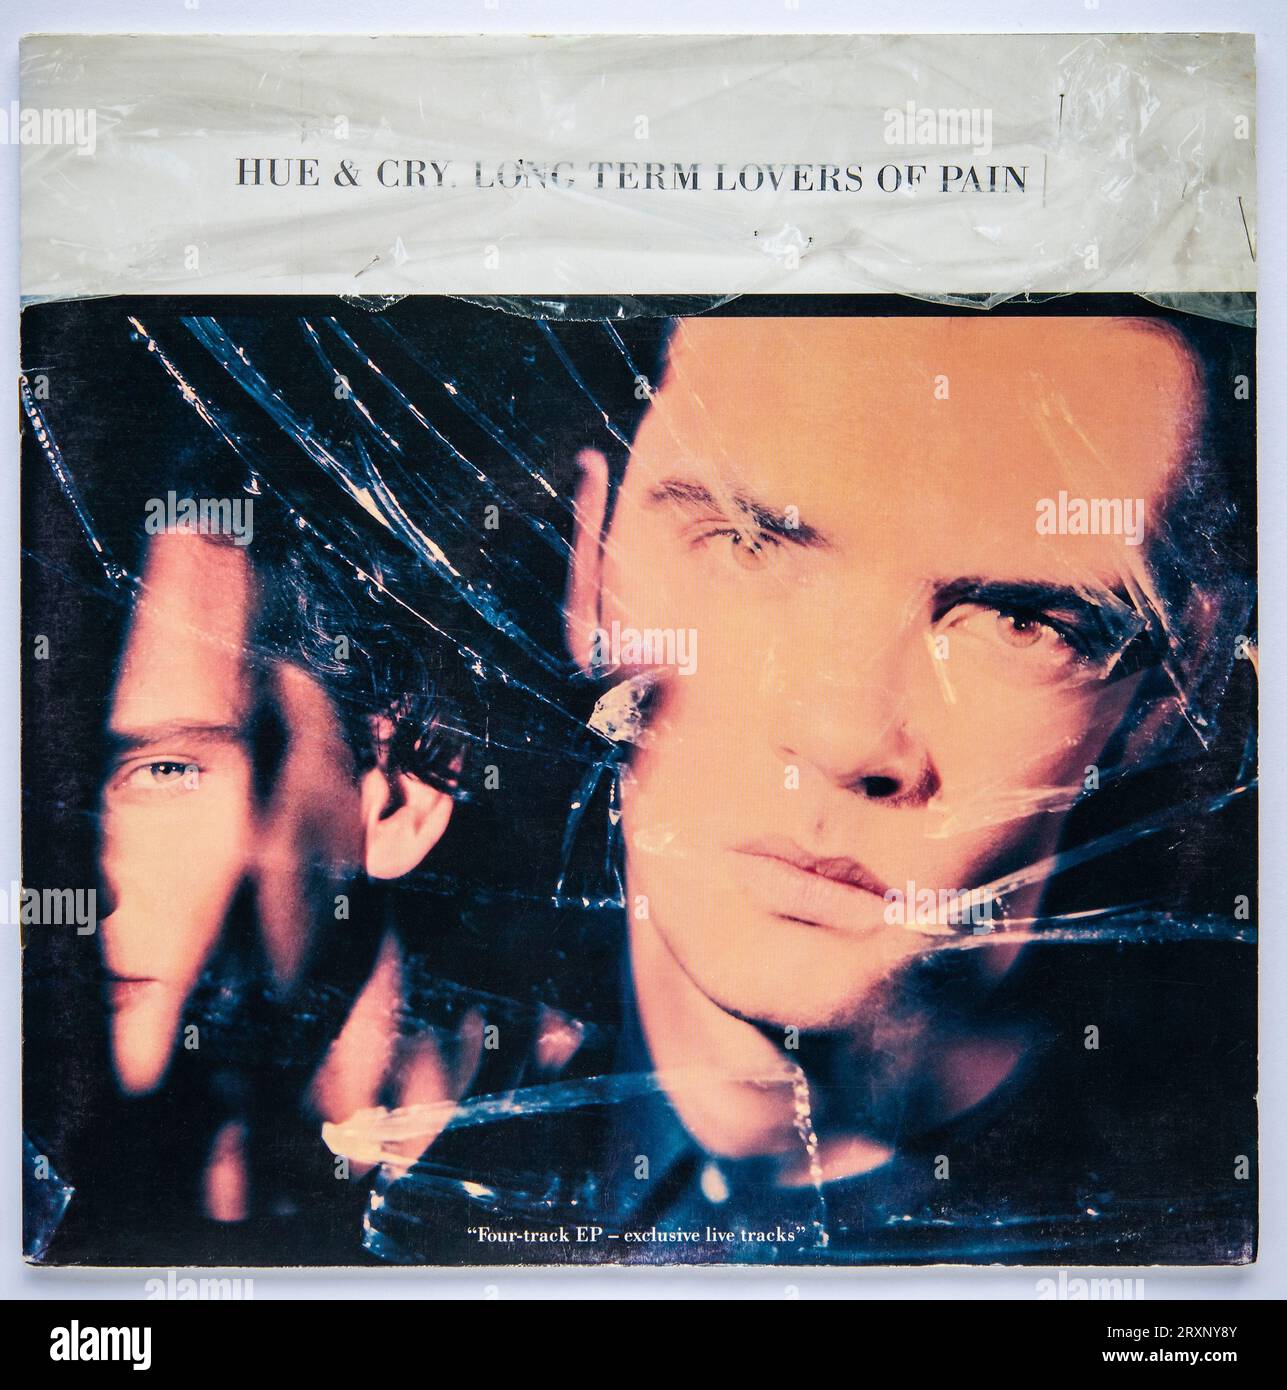 Couverture photo de la version unique de 10 pouces de long Term Lovers of pain de Hue et Cry, qui a été publié en 1991 Banque D'Images